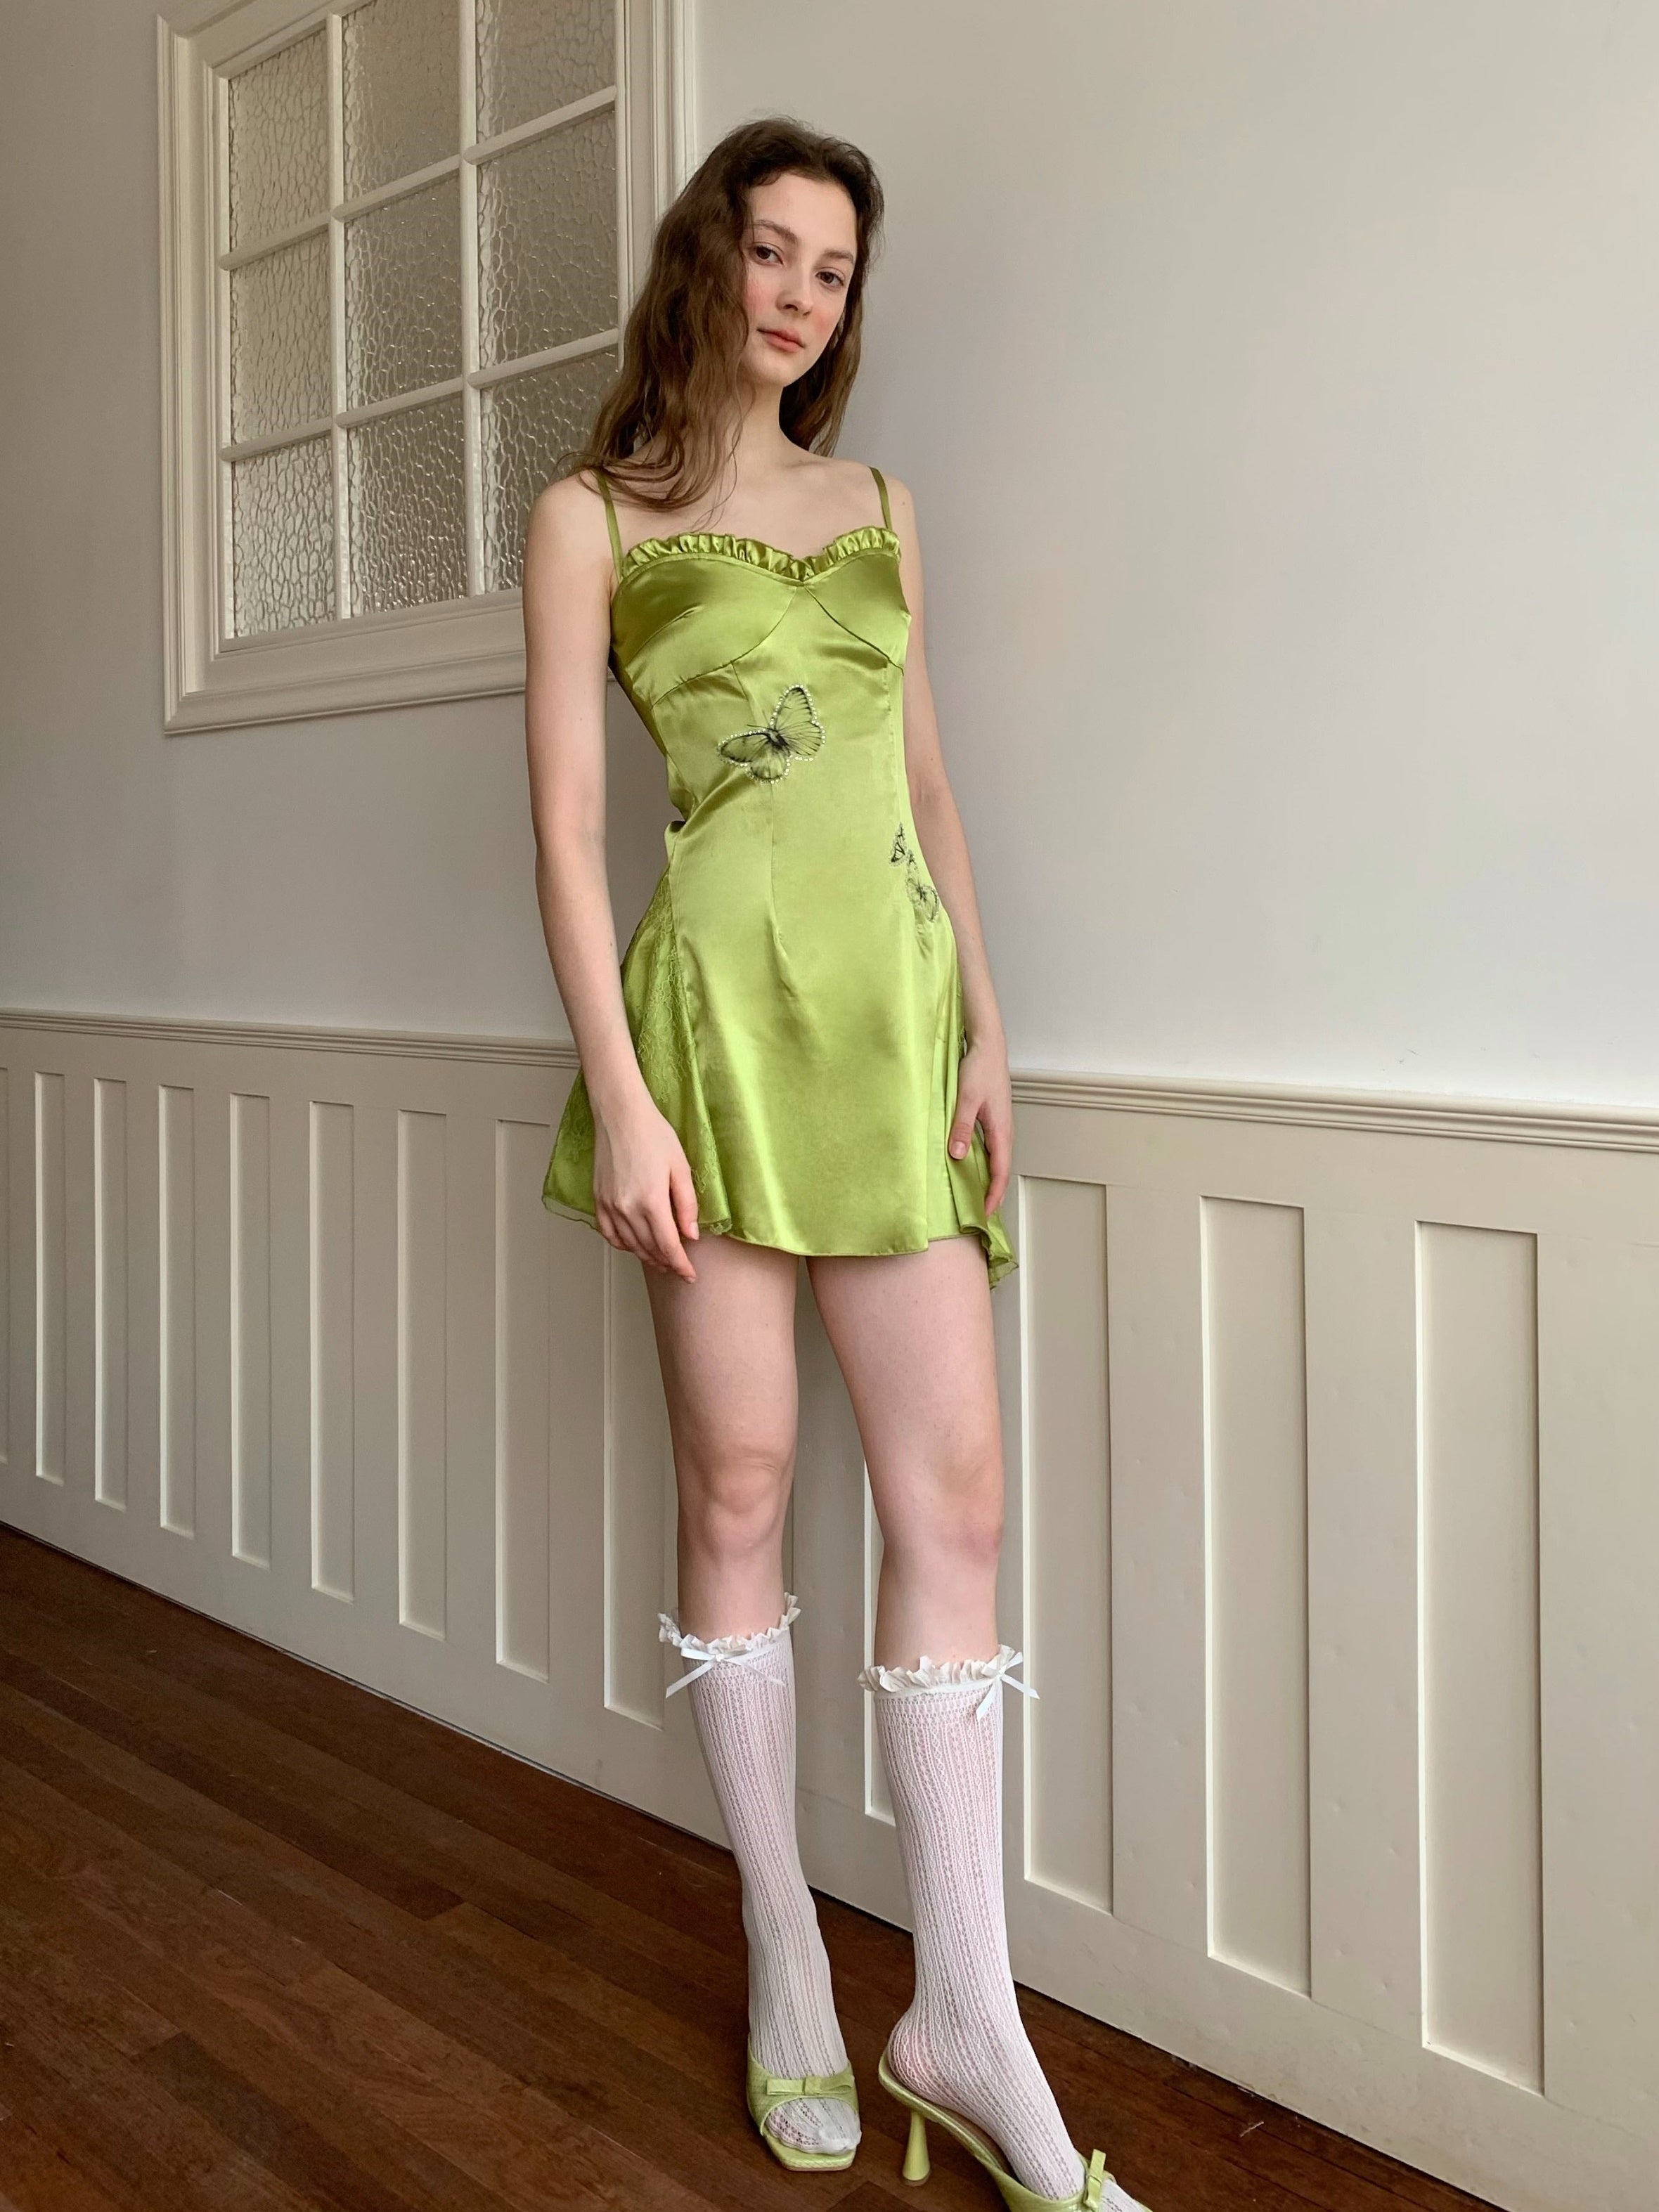 Butterfly Print Lace Irregular Design Slip Dress